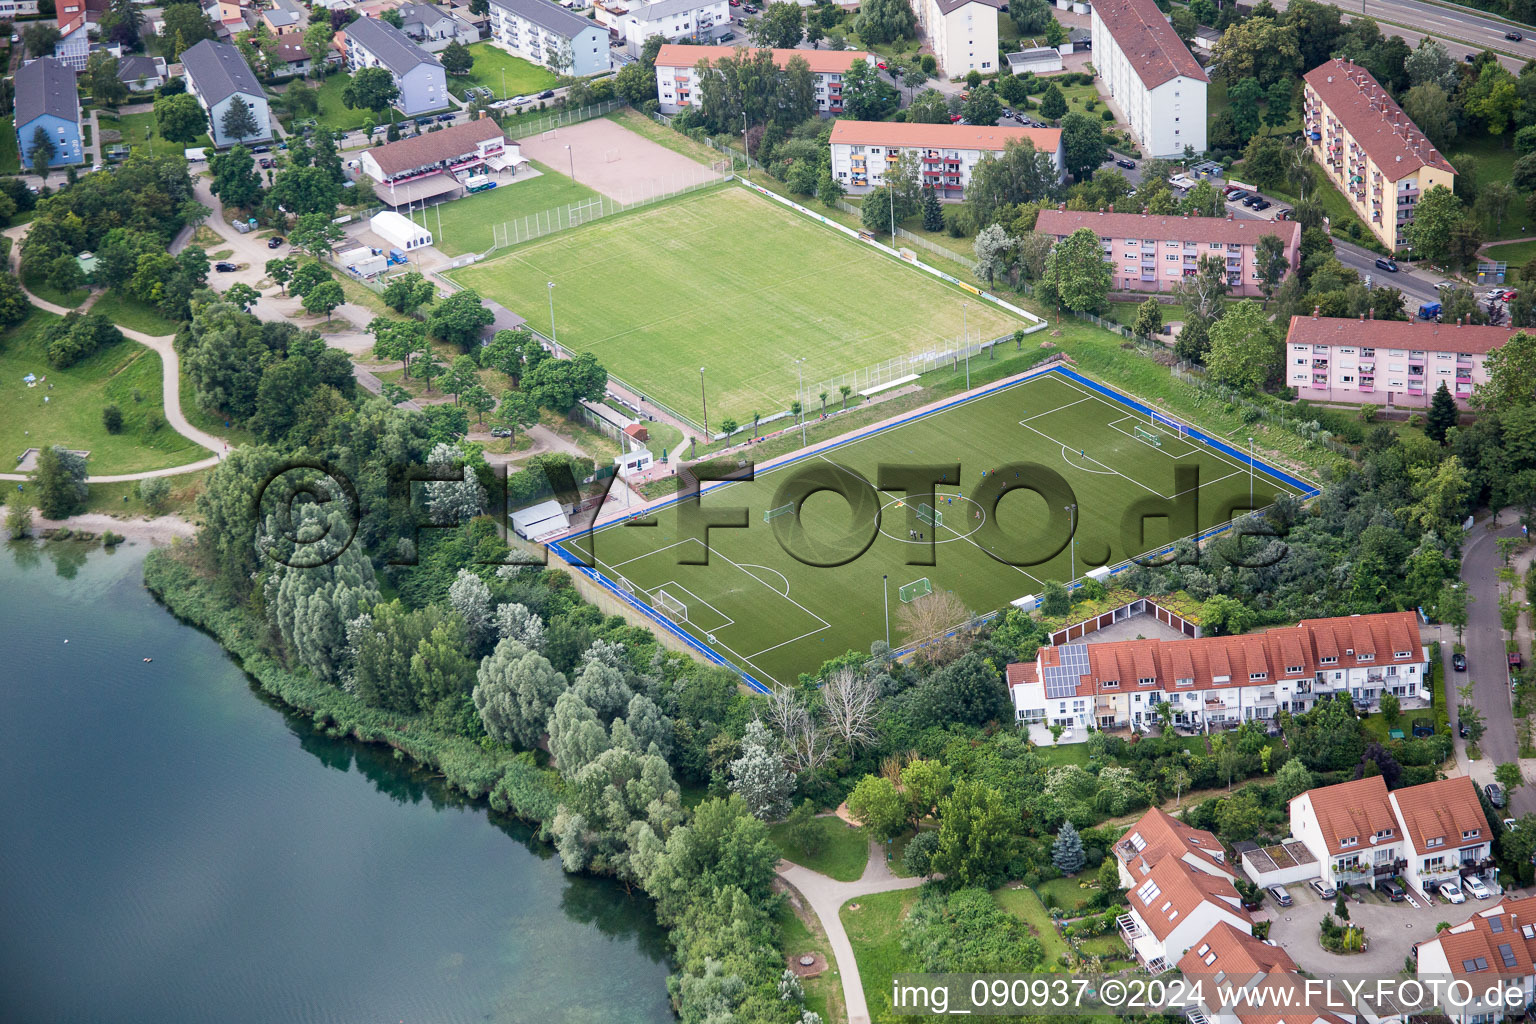 Sportplatz- Fussballplatz von SV Rot-Weiß am Rheinauer See im Ortsteil Rheinau in Mannheim im Bundesland Baden-Württemberg, Deutschland